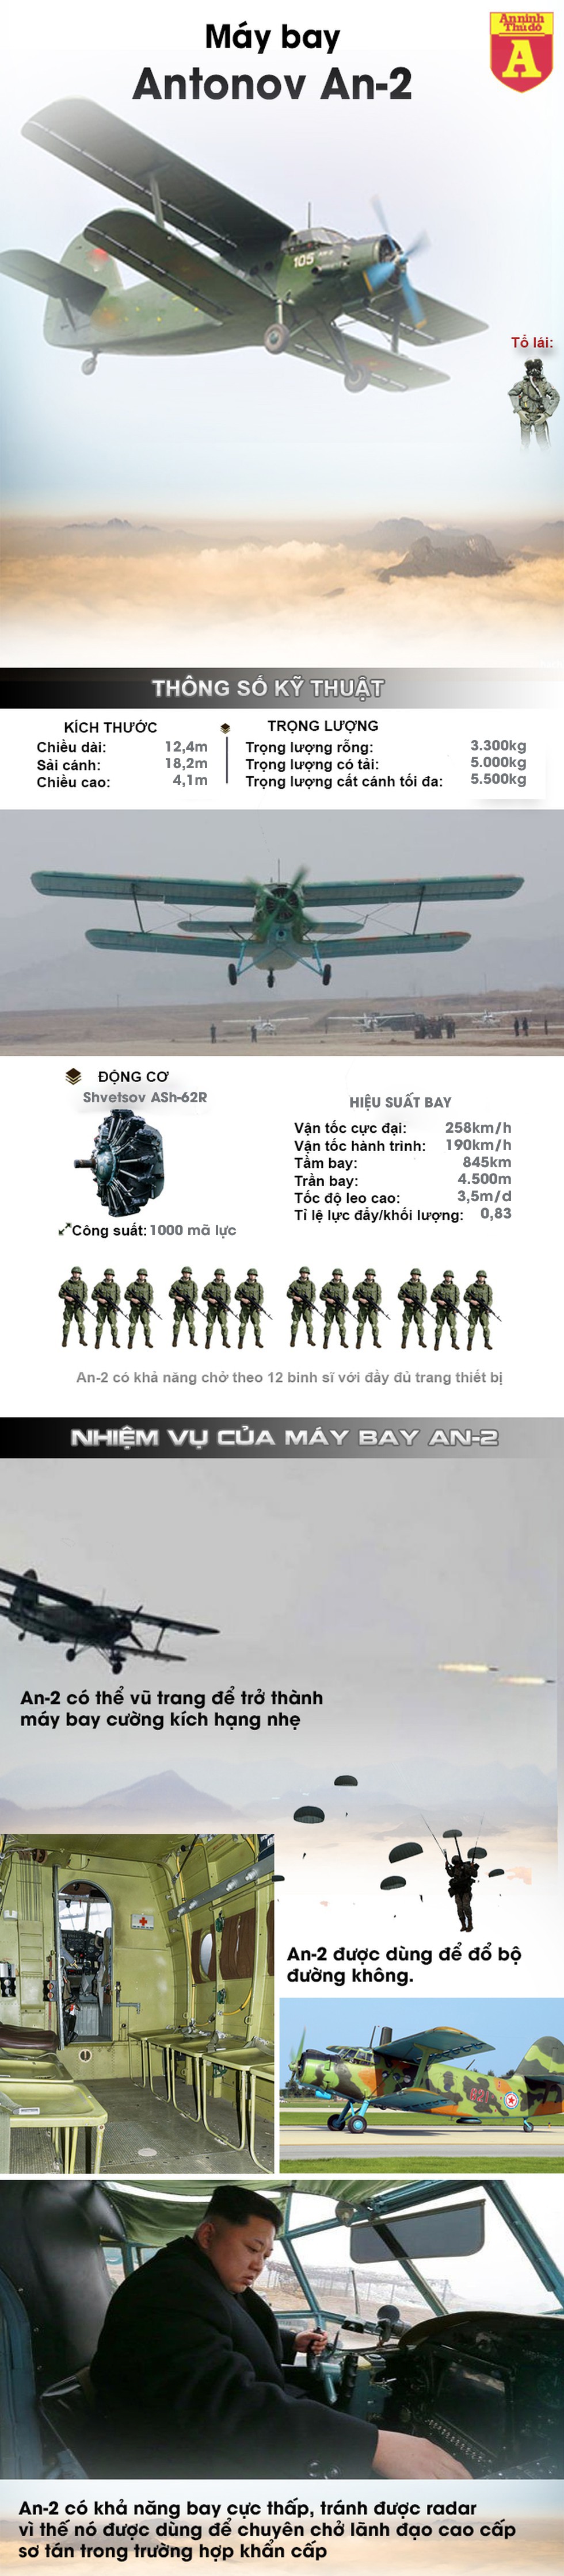 [Info] Đây chính là lý do Triều Tiên cho "lão tướng" An-2 đóng giả chiến thần F-15K ảnh 2